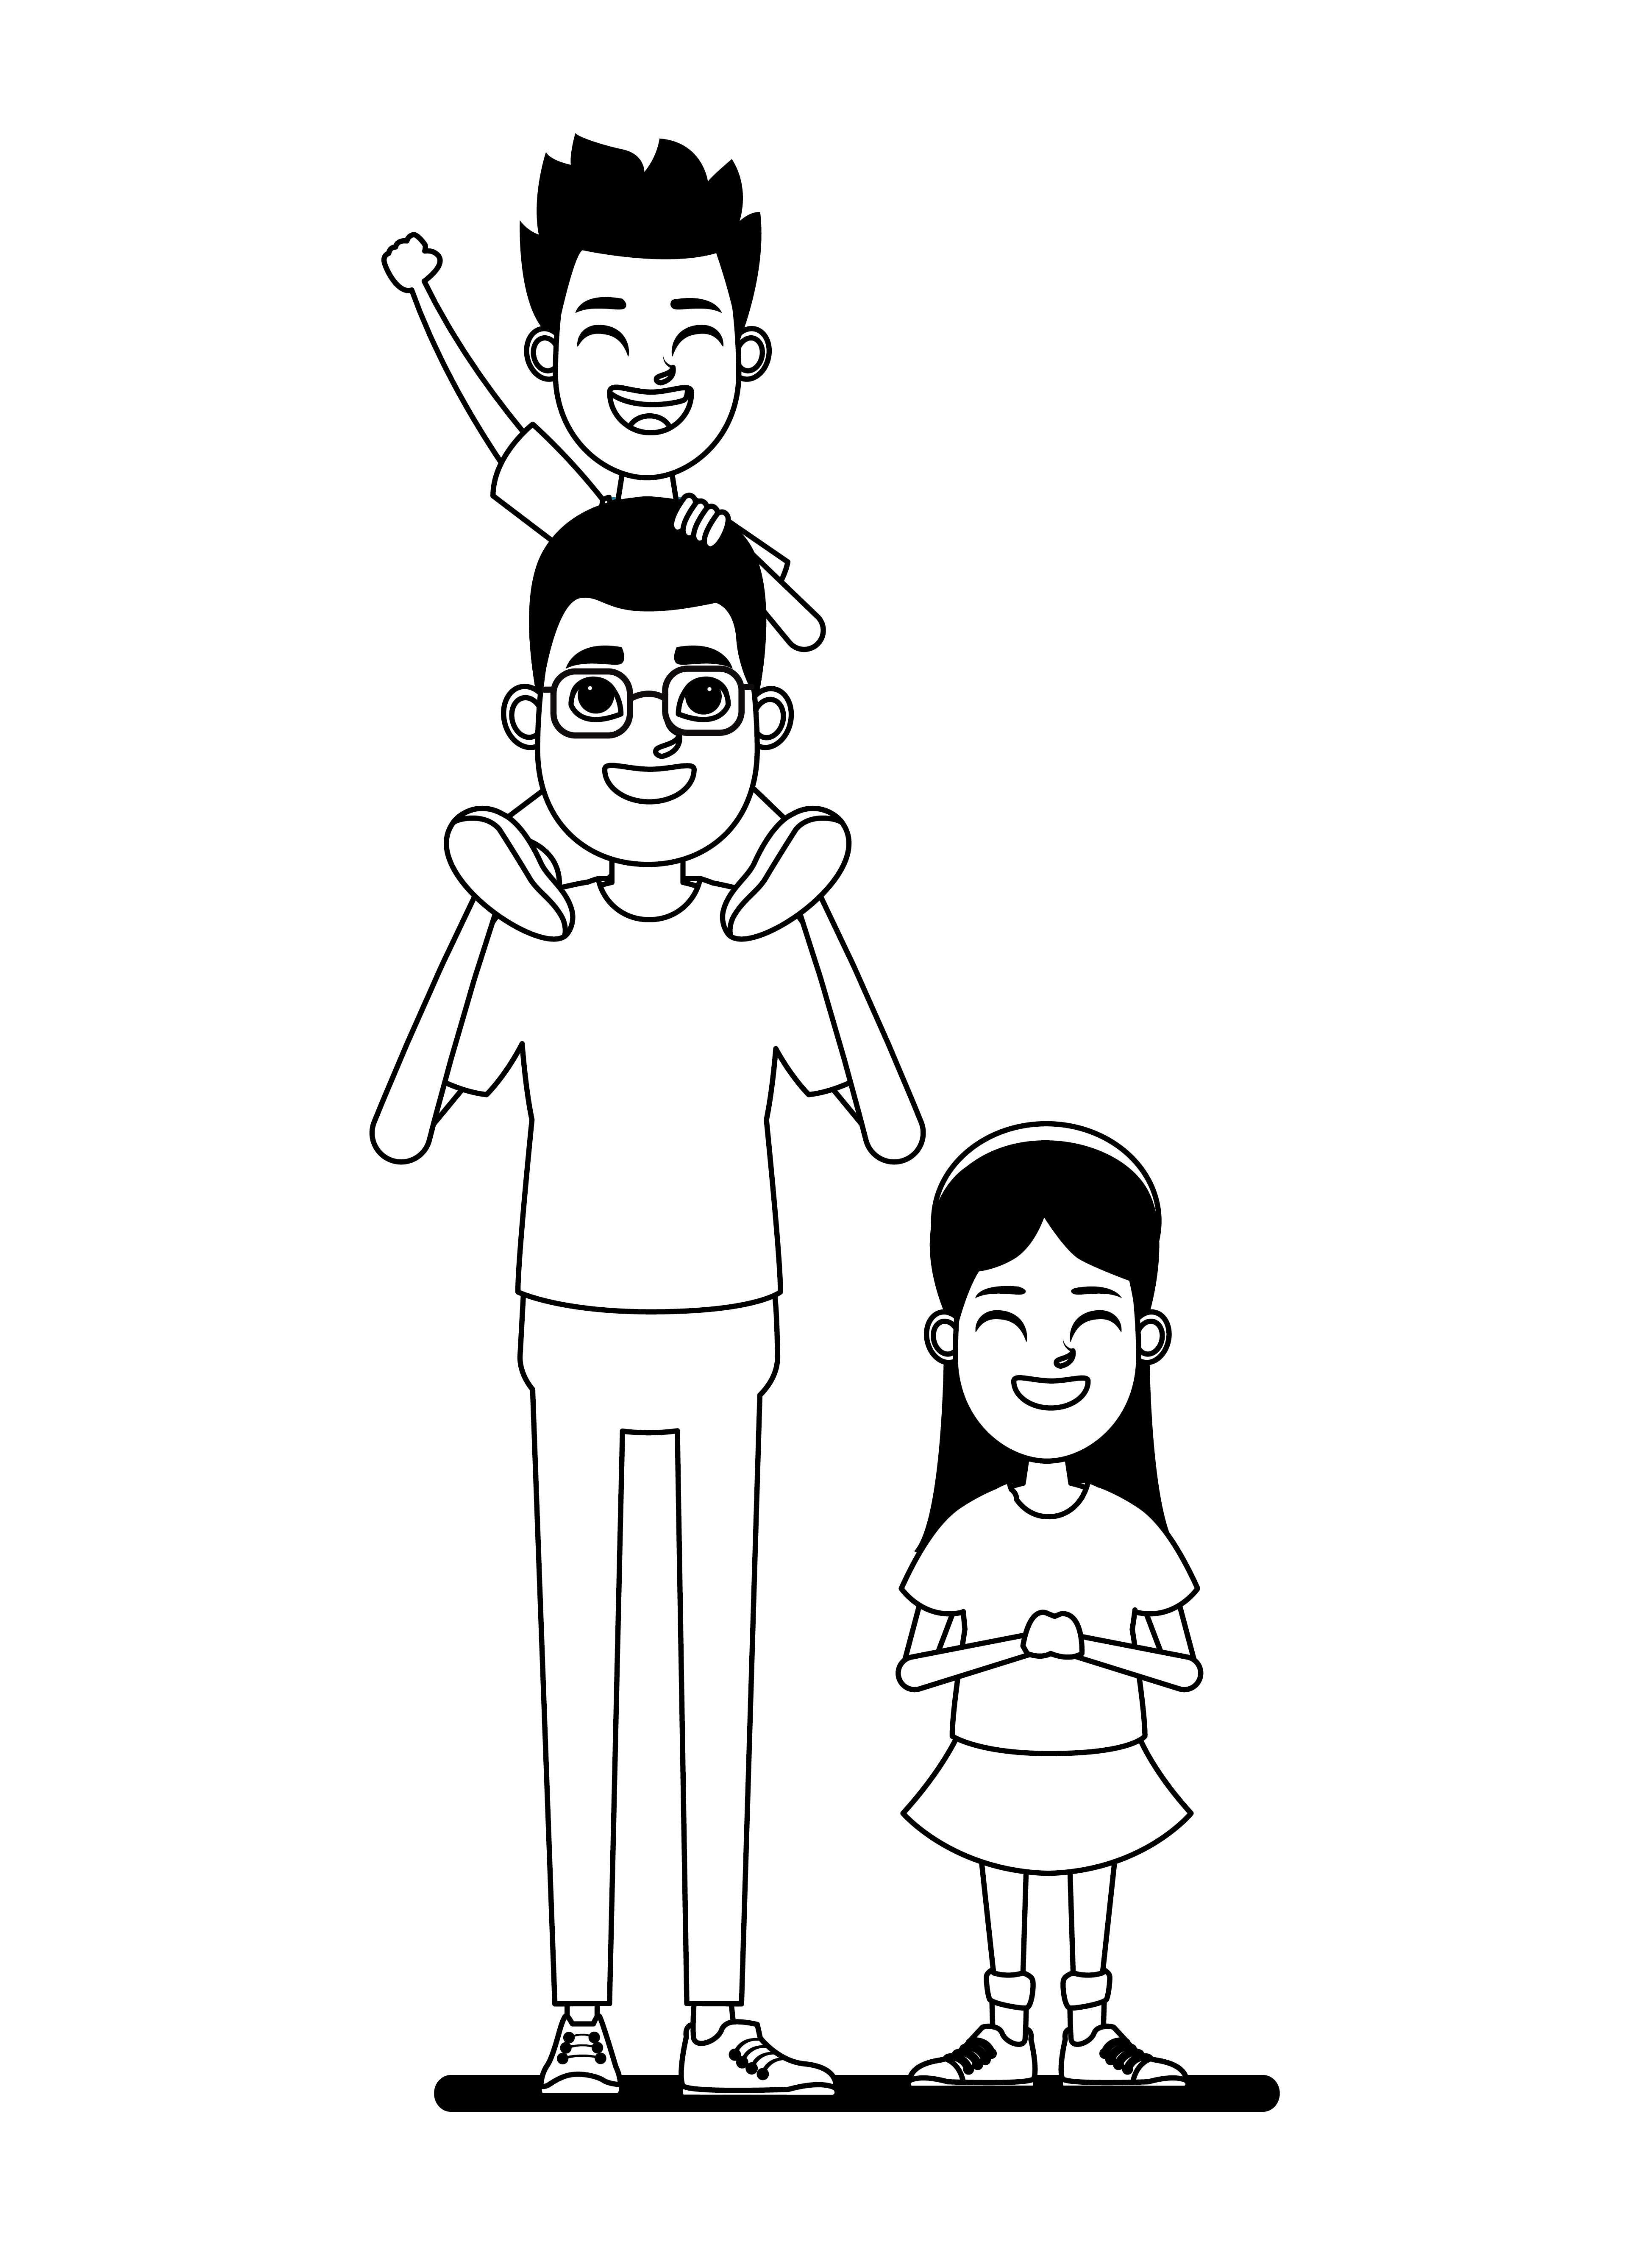 retrato de personagens de desenhos animados em família em preto e branco  1503736 Vetor no Vecteezy